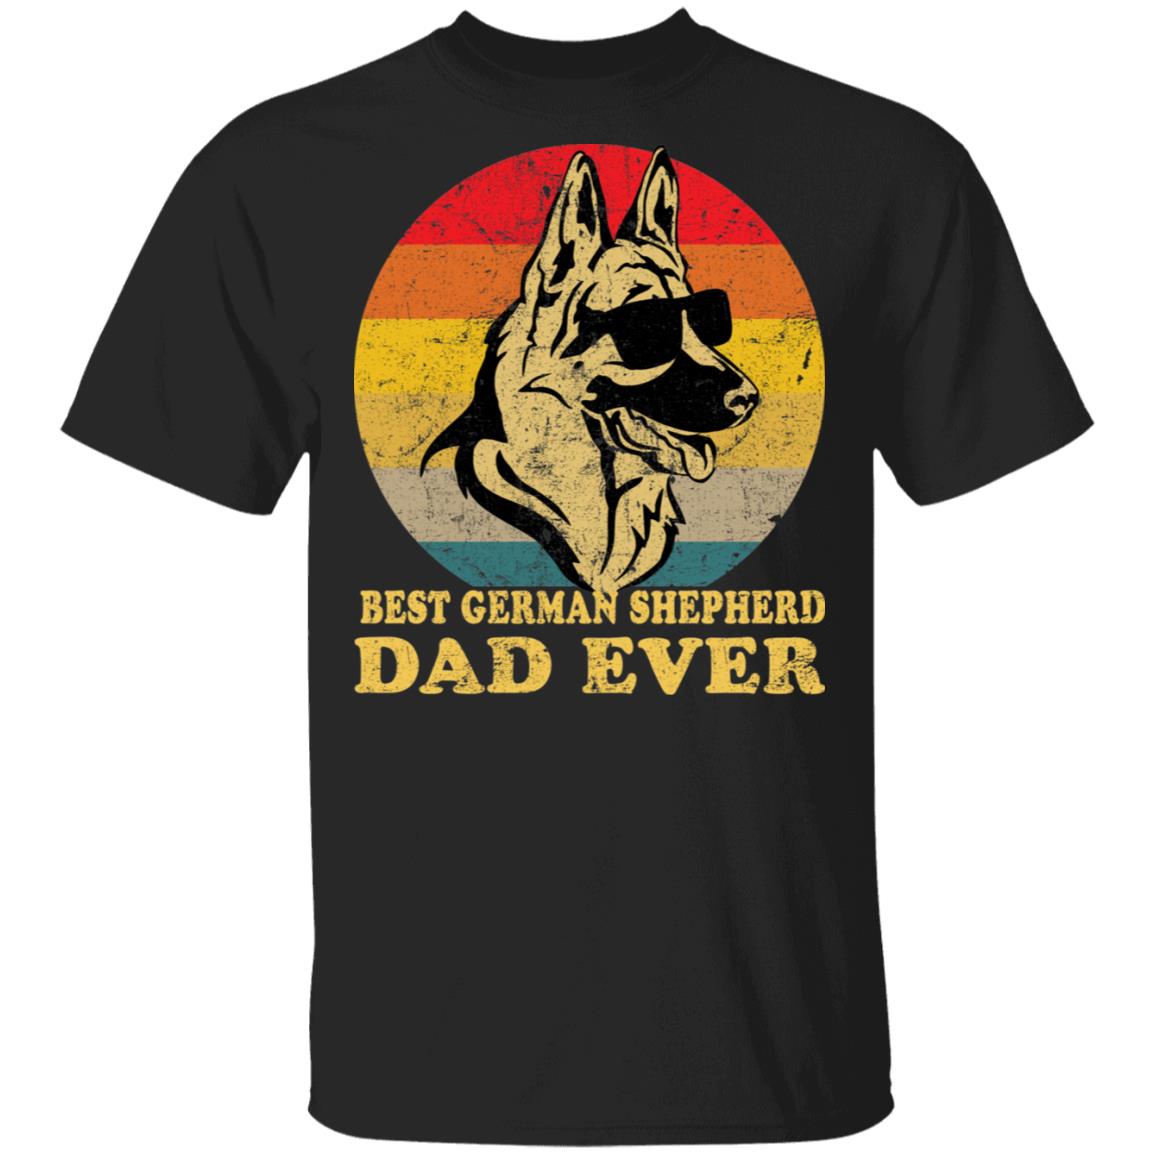 Best German Shepherd Dad ever shirt - Rockatee